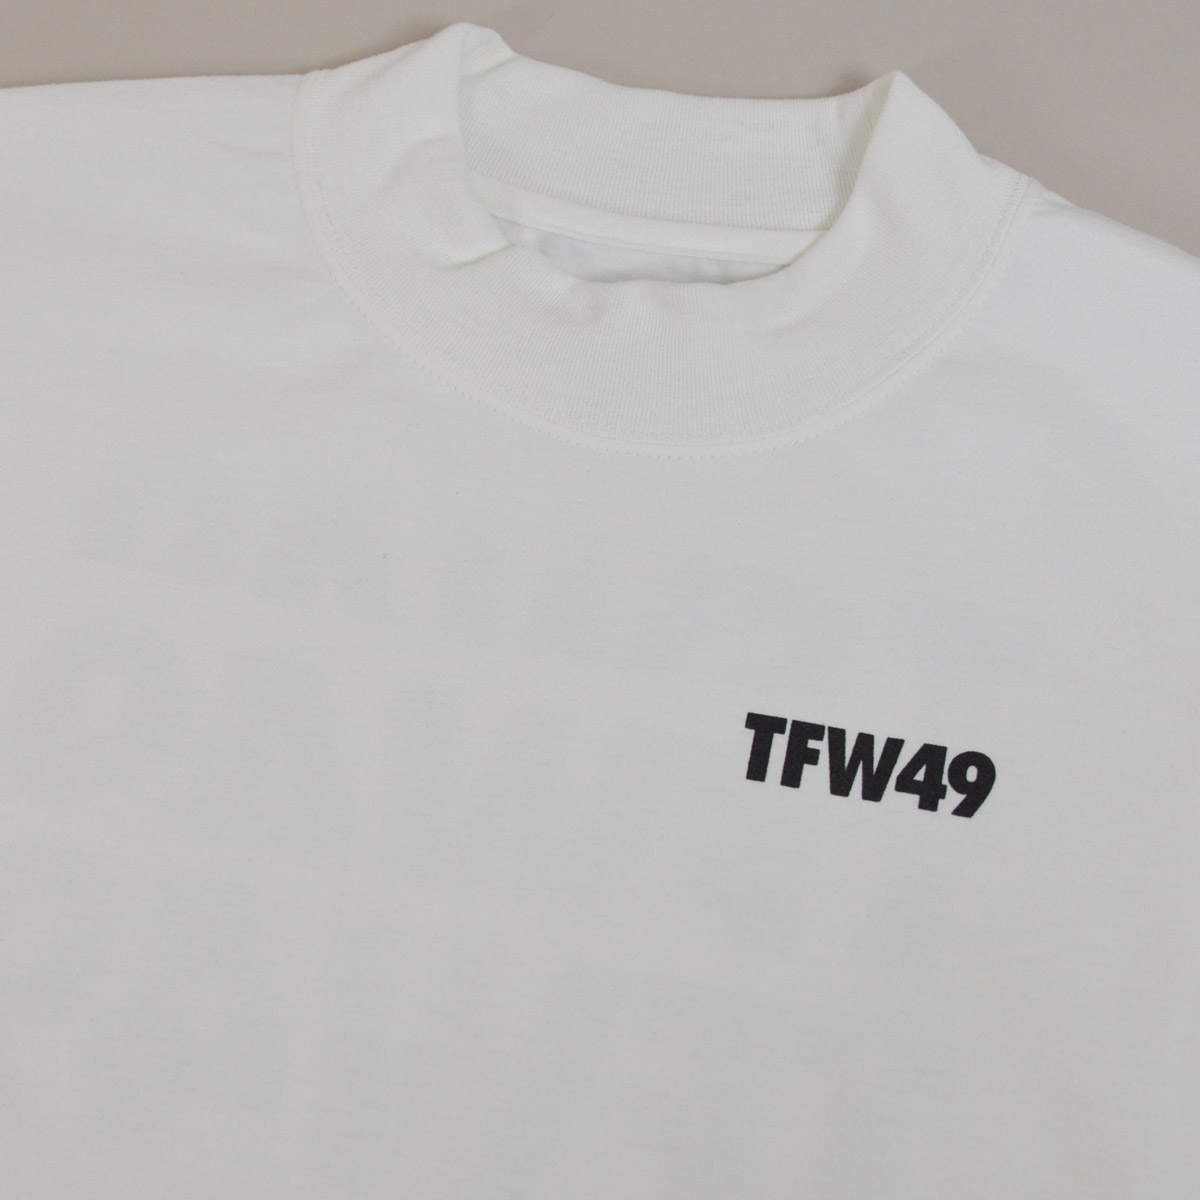 TFW49 半袖ハイネックシャツ メンズ (M)(L) junhashimoto ジュン 